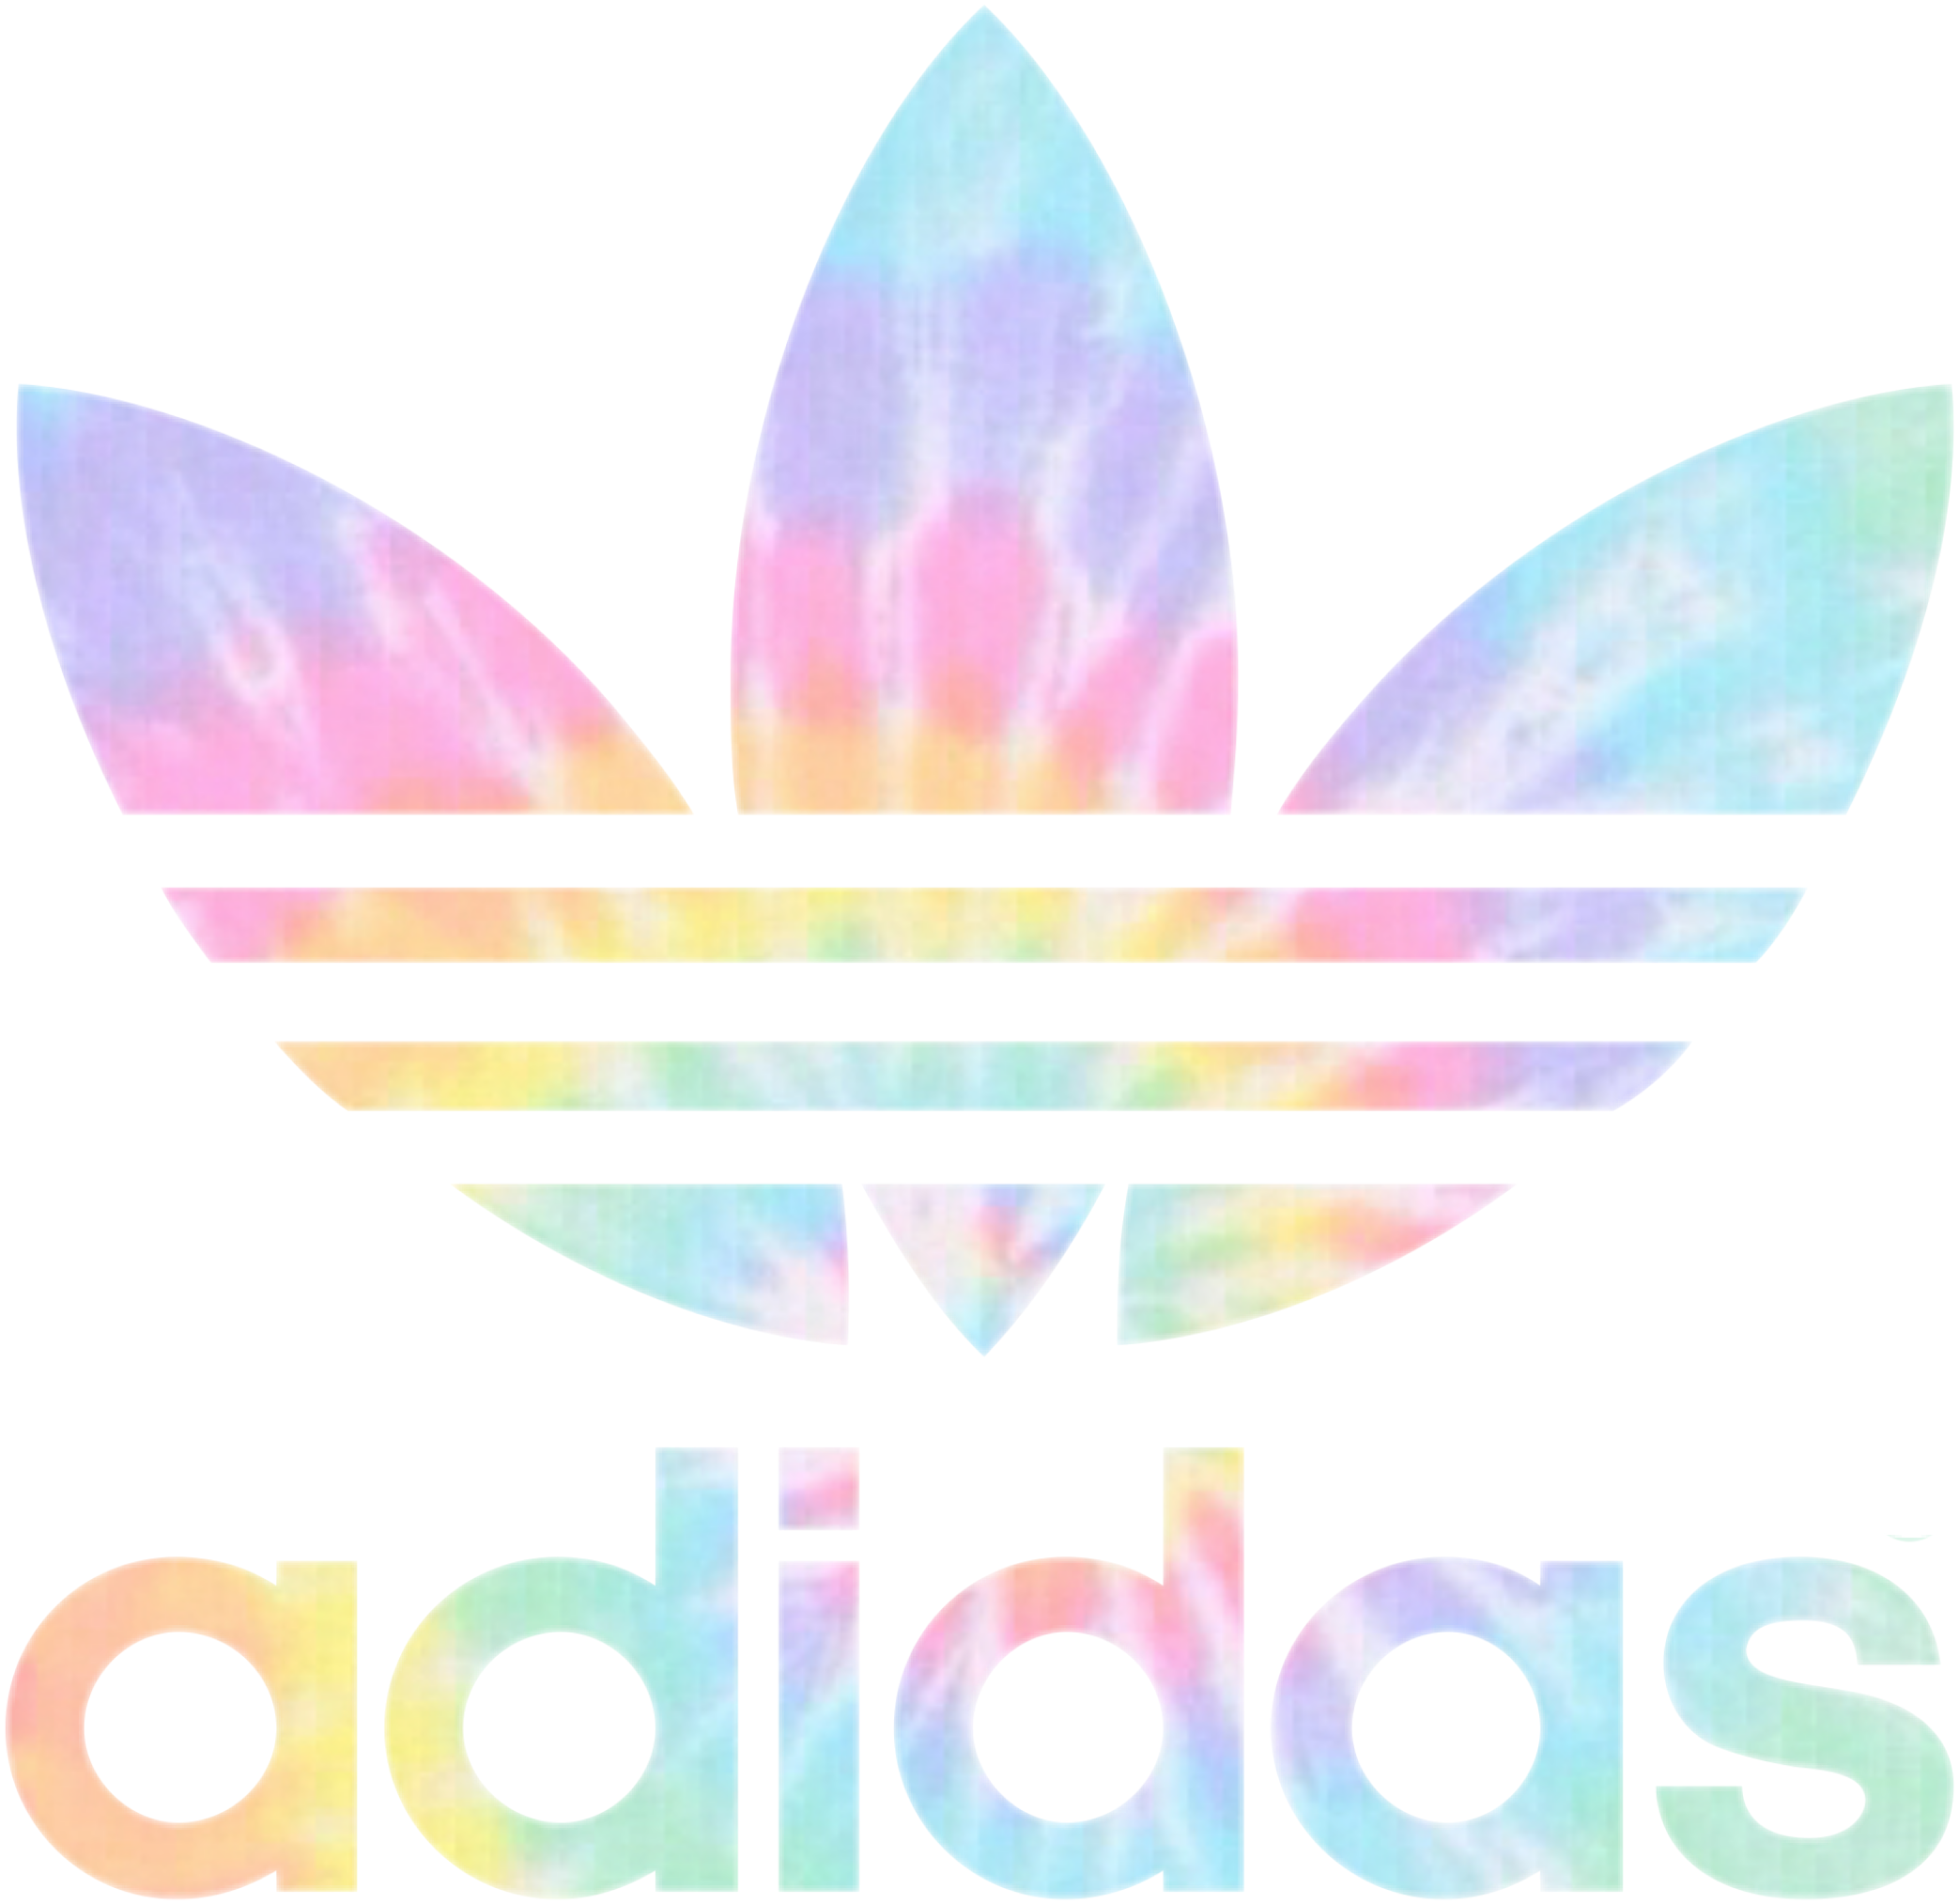 Free Adidas Logo Transparent Background, Download Free Adidas Logo